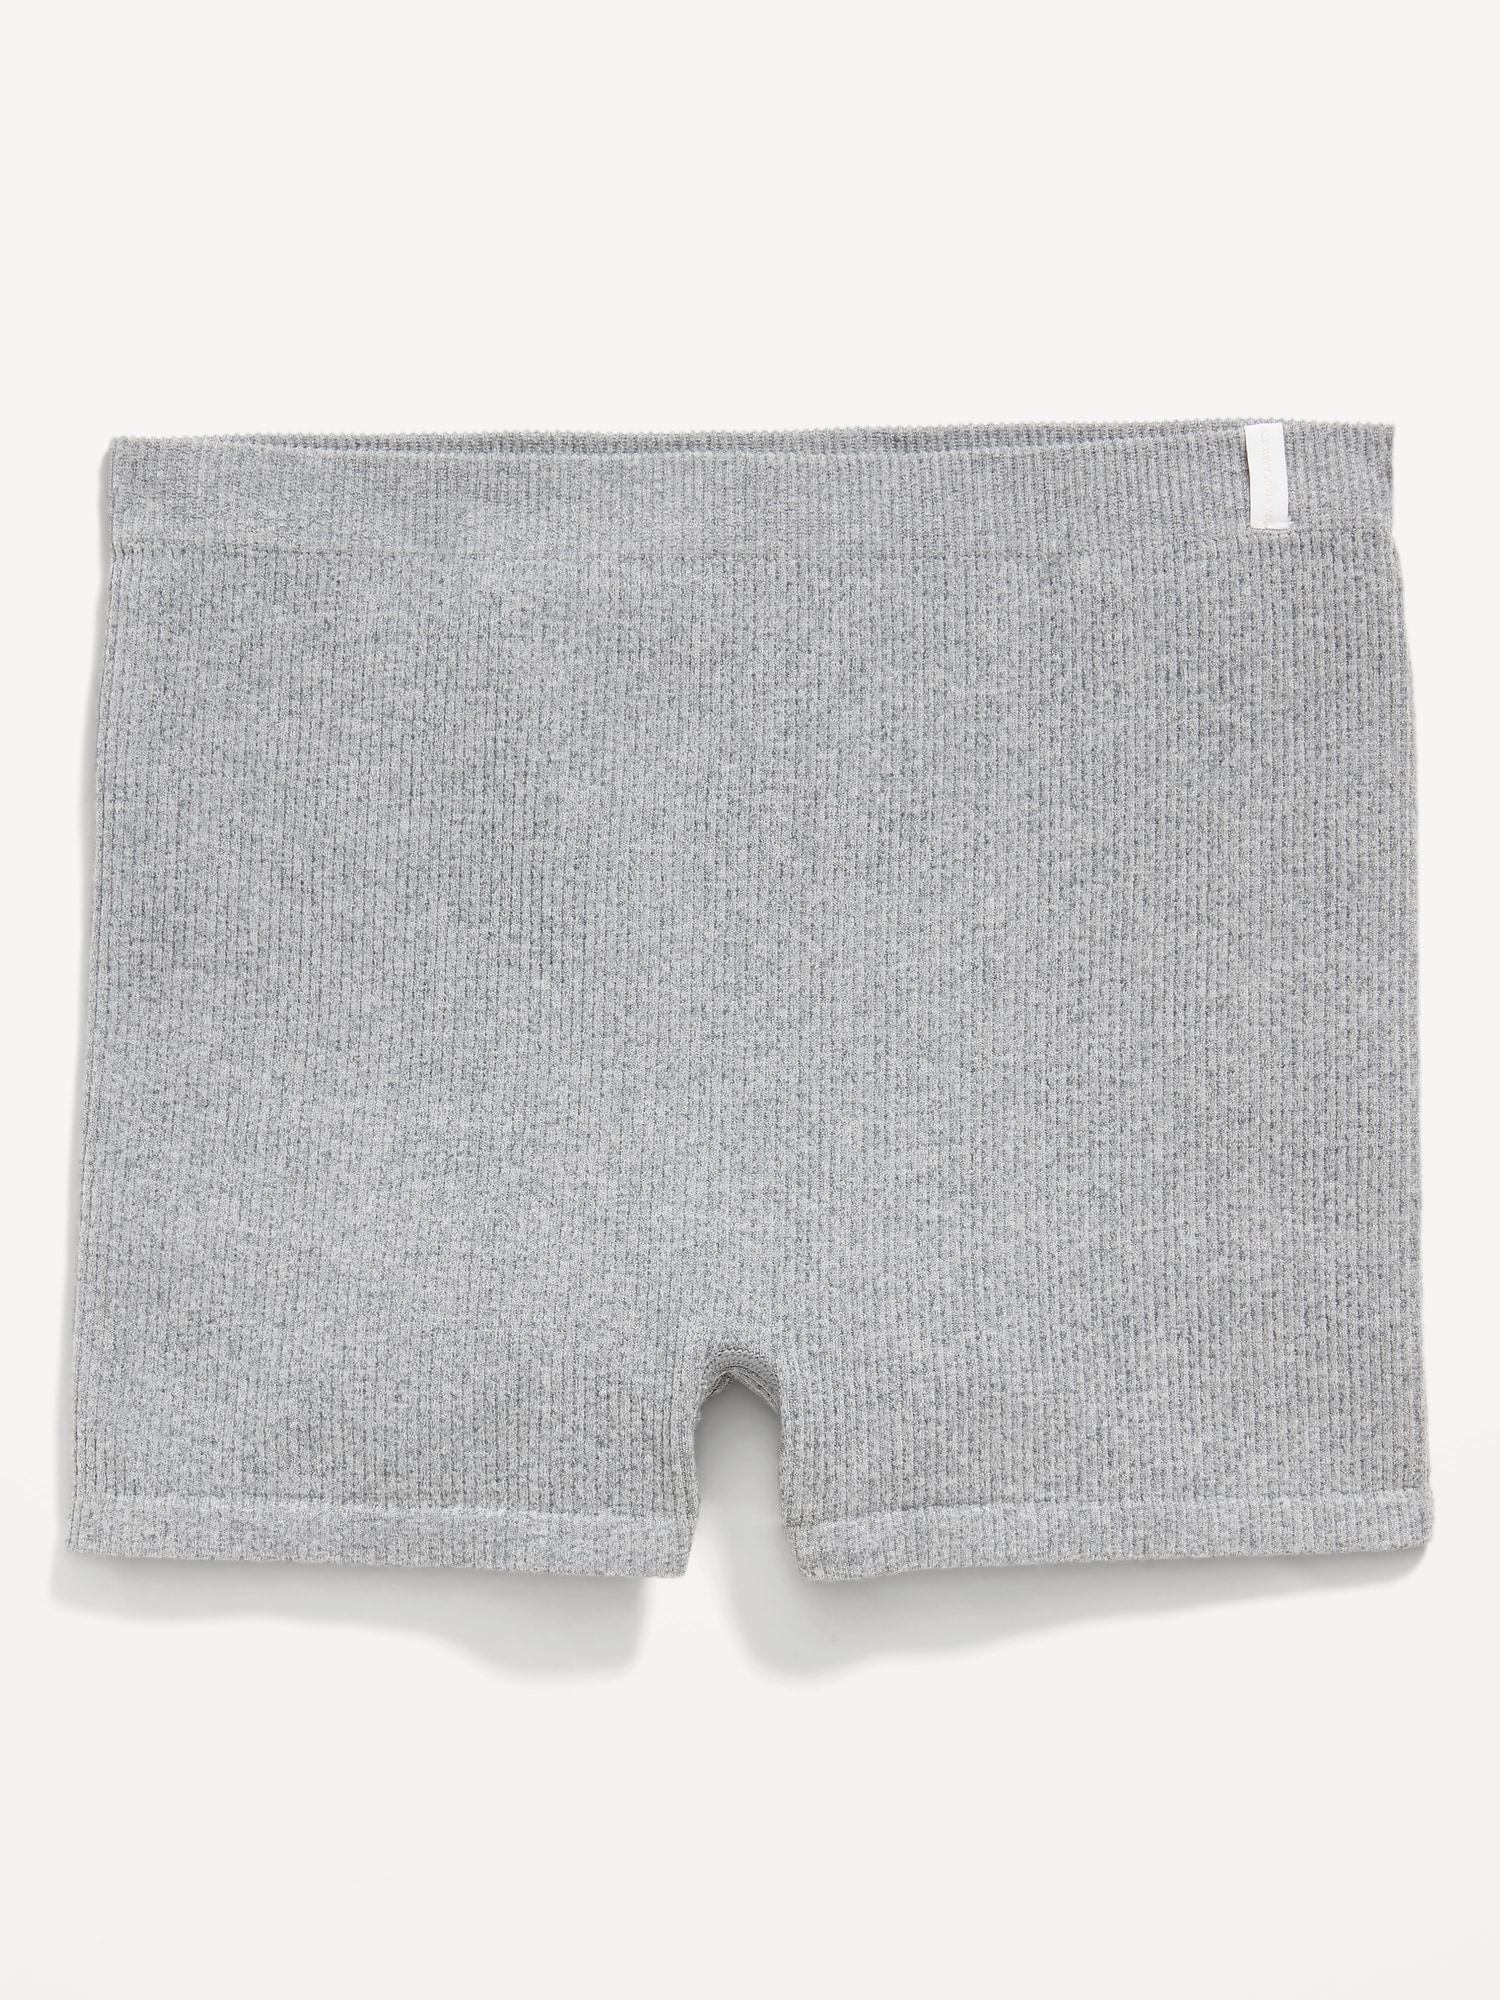 Soft-Knit No-Show Brief Underwear